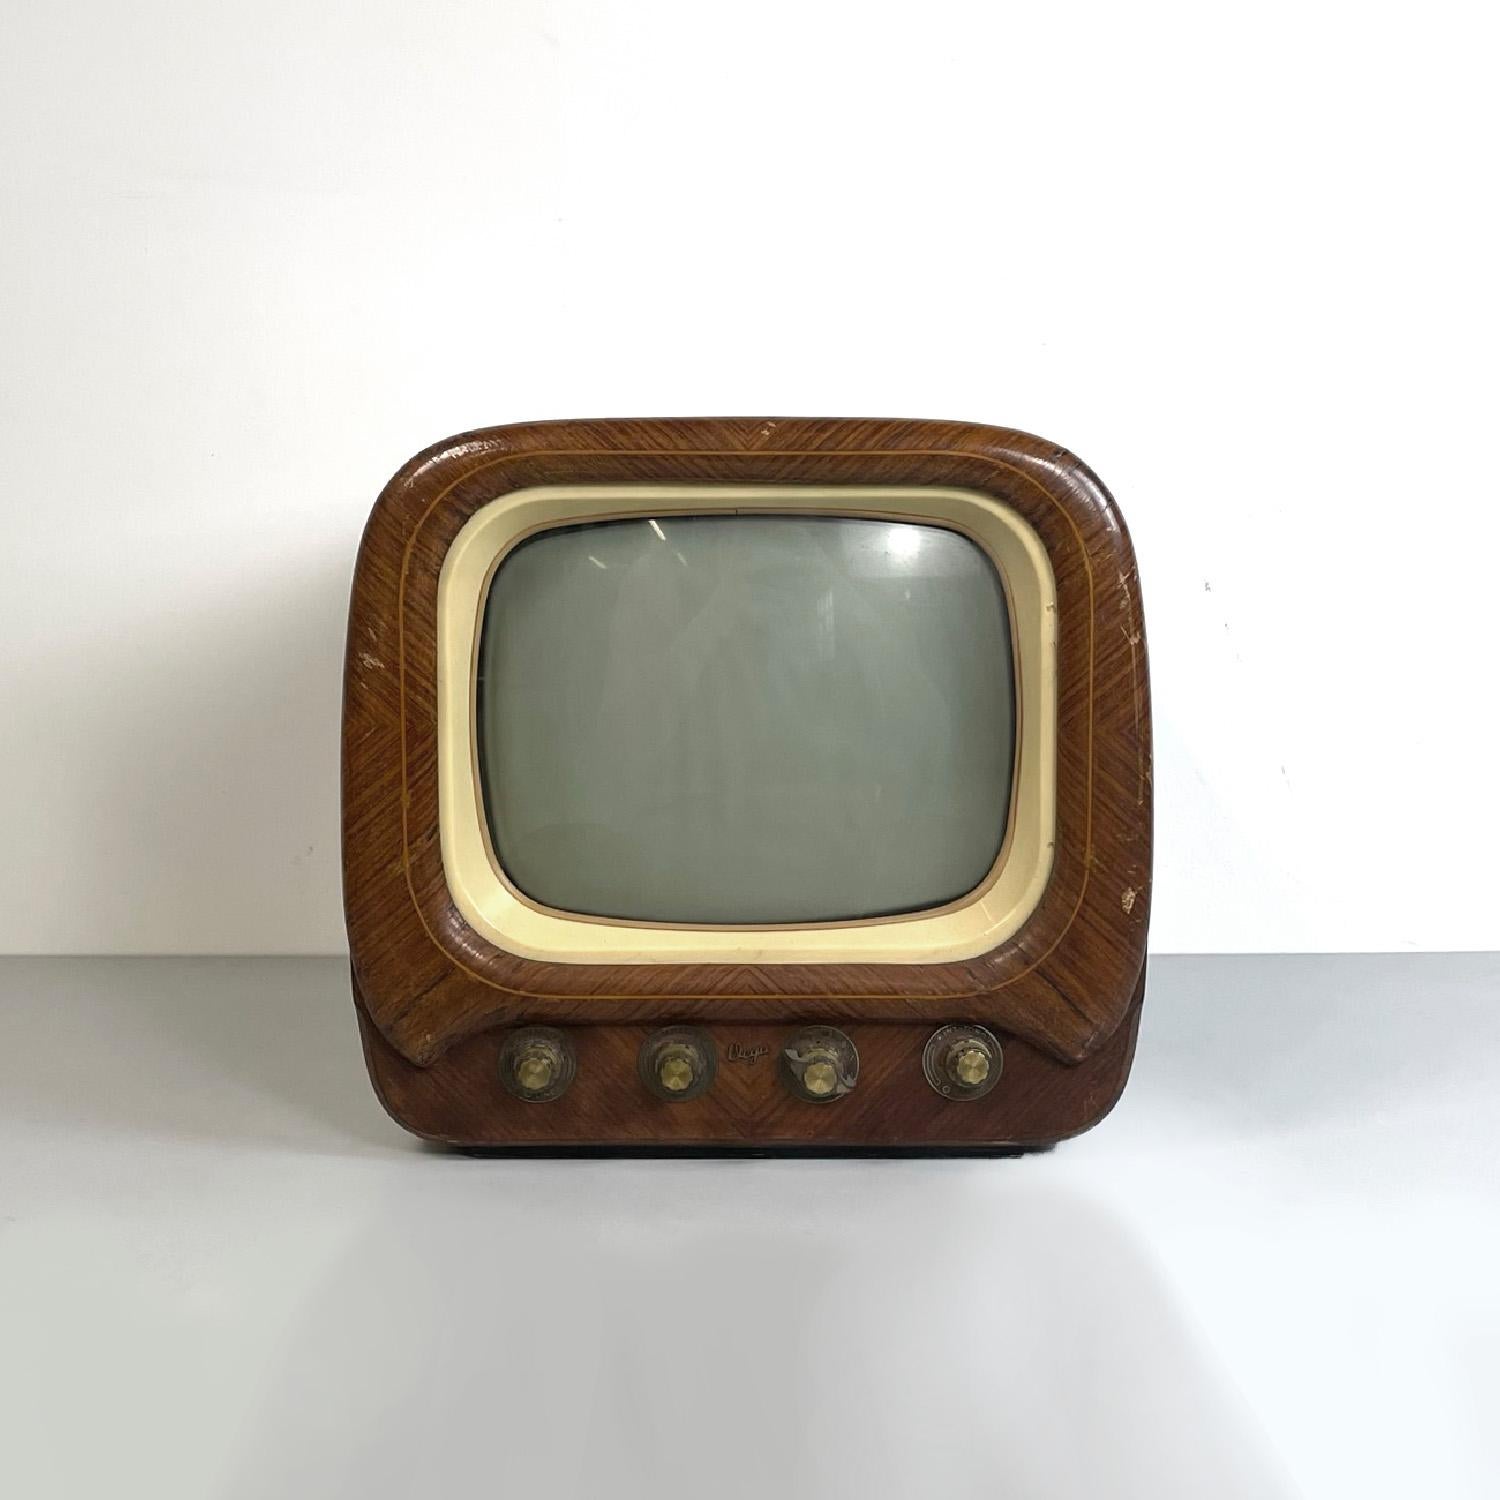 Italienischer Fernseher aus braunem Holz und weißem Kunststoff aus der Mitte des Jahrhunderts von Vega, 1950er Jahre
Rechteckiger Fernseher aus Holz. Der Bildschirm hat abgerundete Ecken und einen cremefarbenen Kunststoffrahmen, darunter befinden